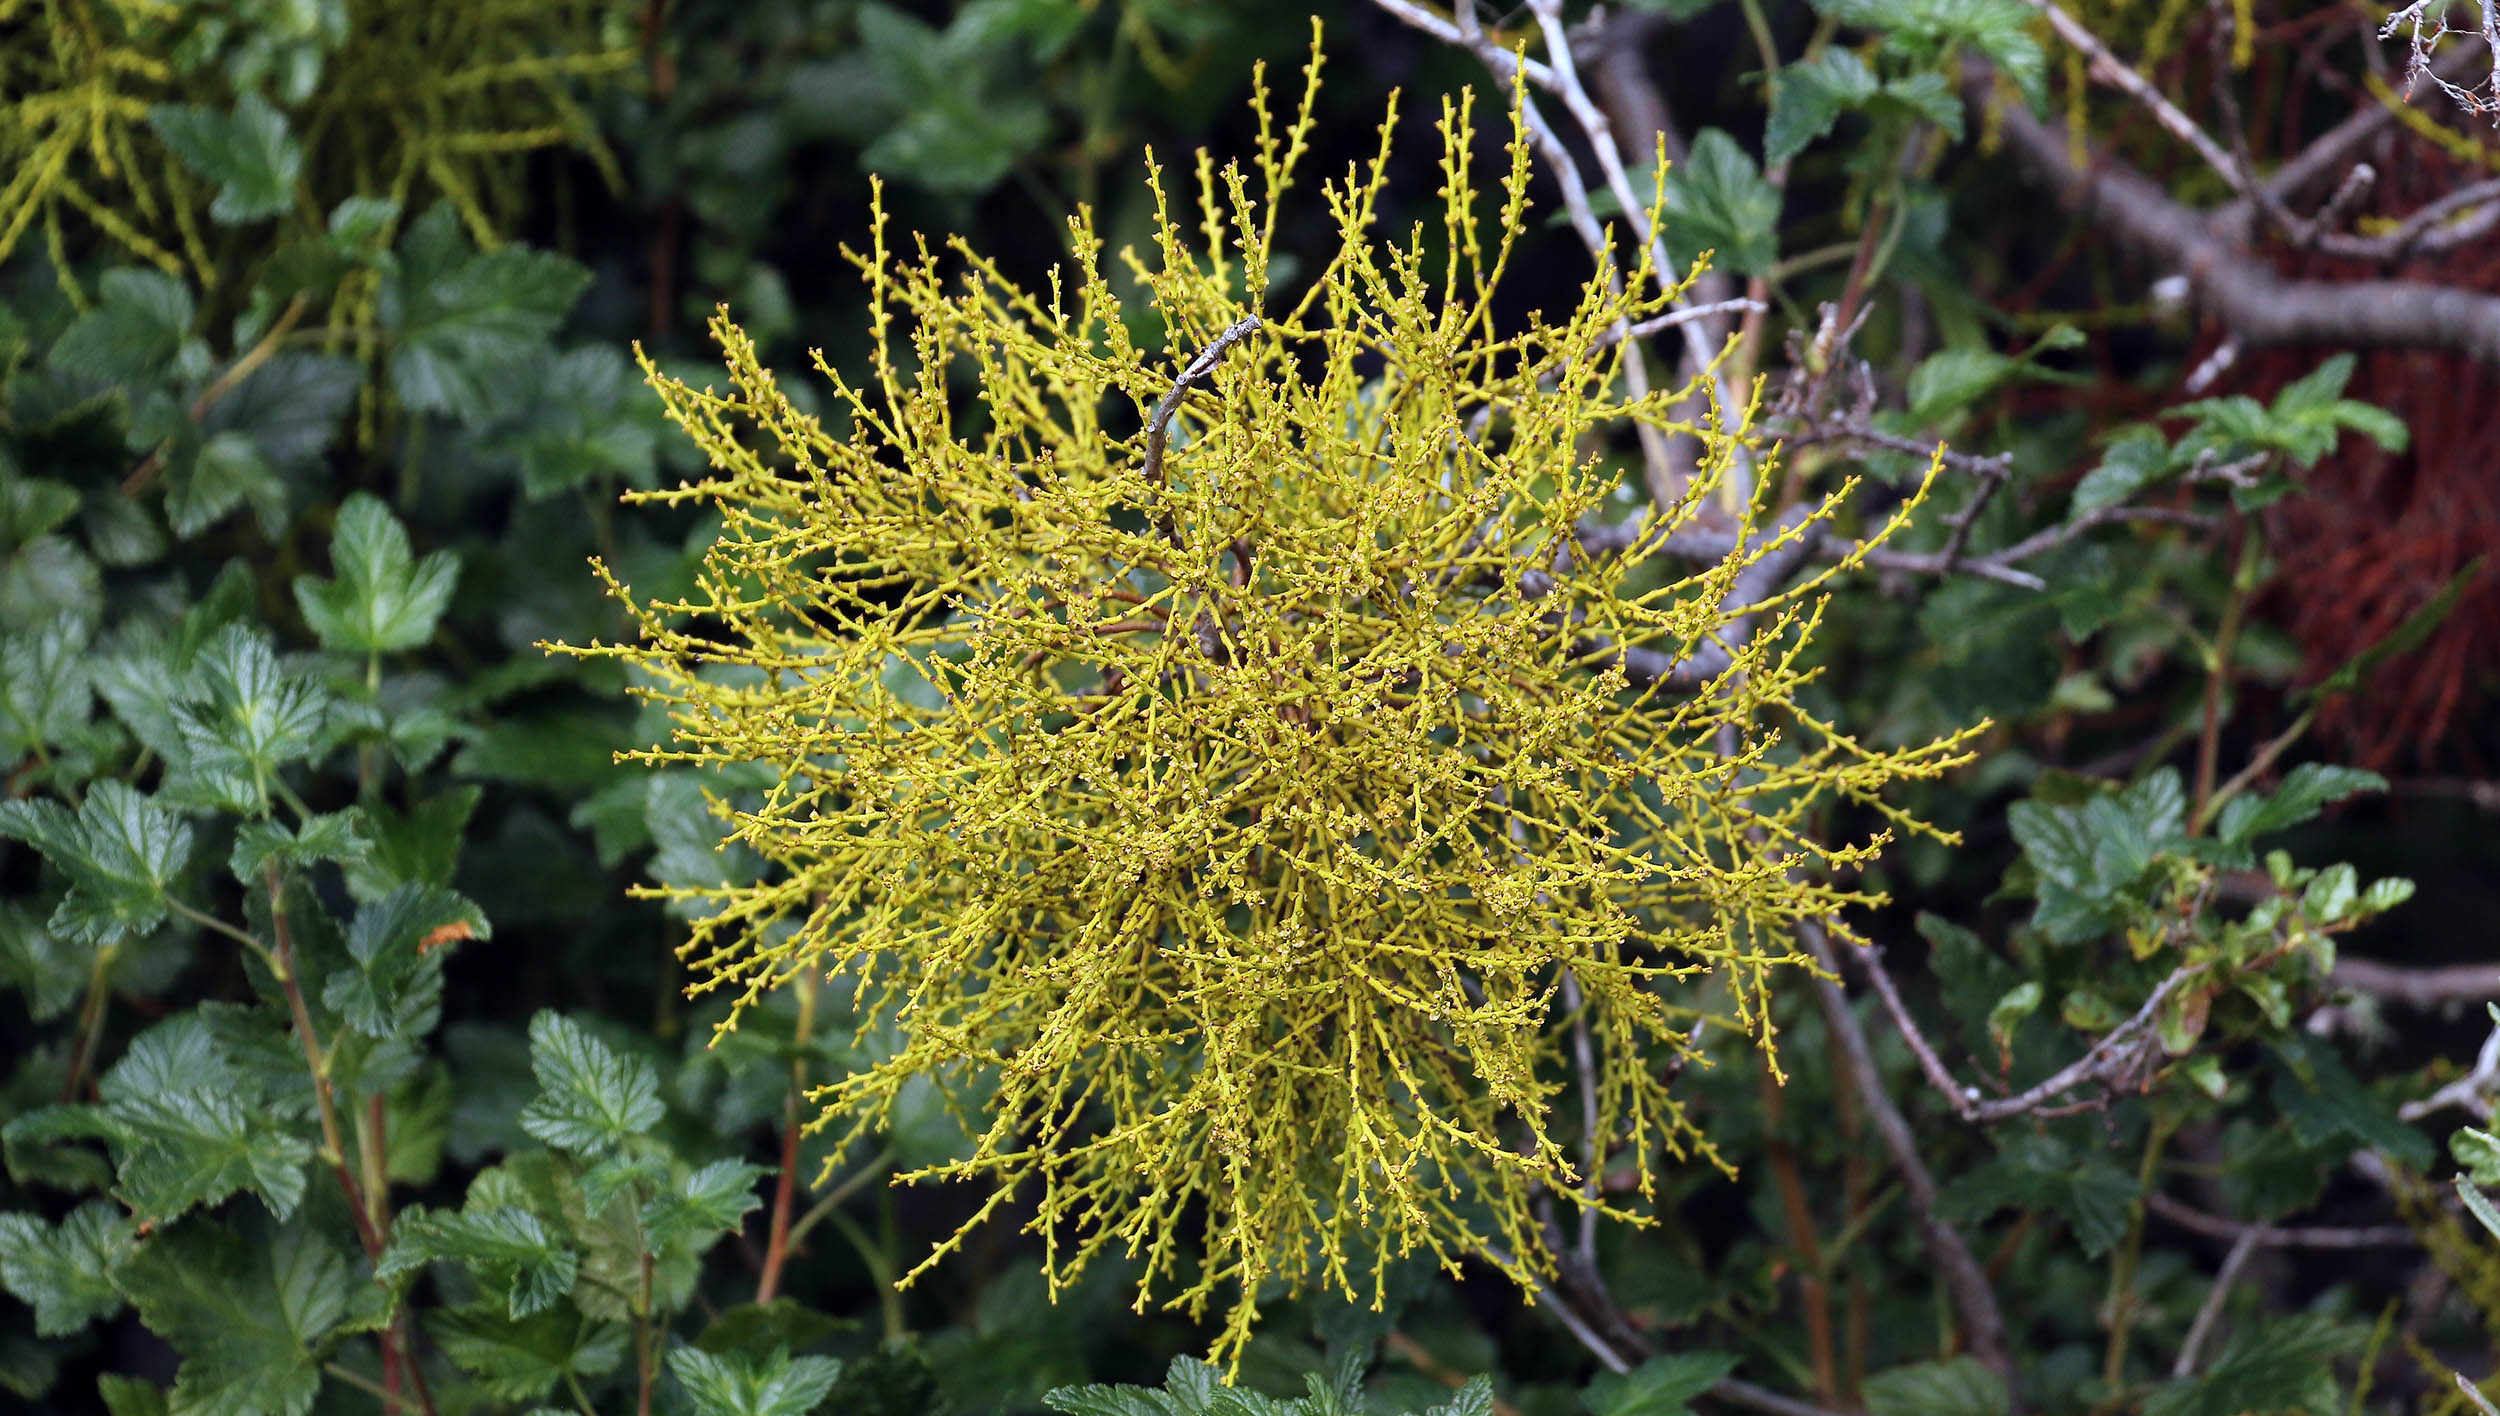 Misodendrum-punctulatum-mistletoe-puerto-williams